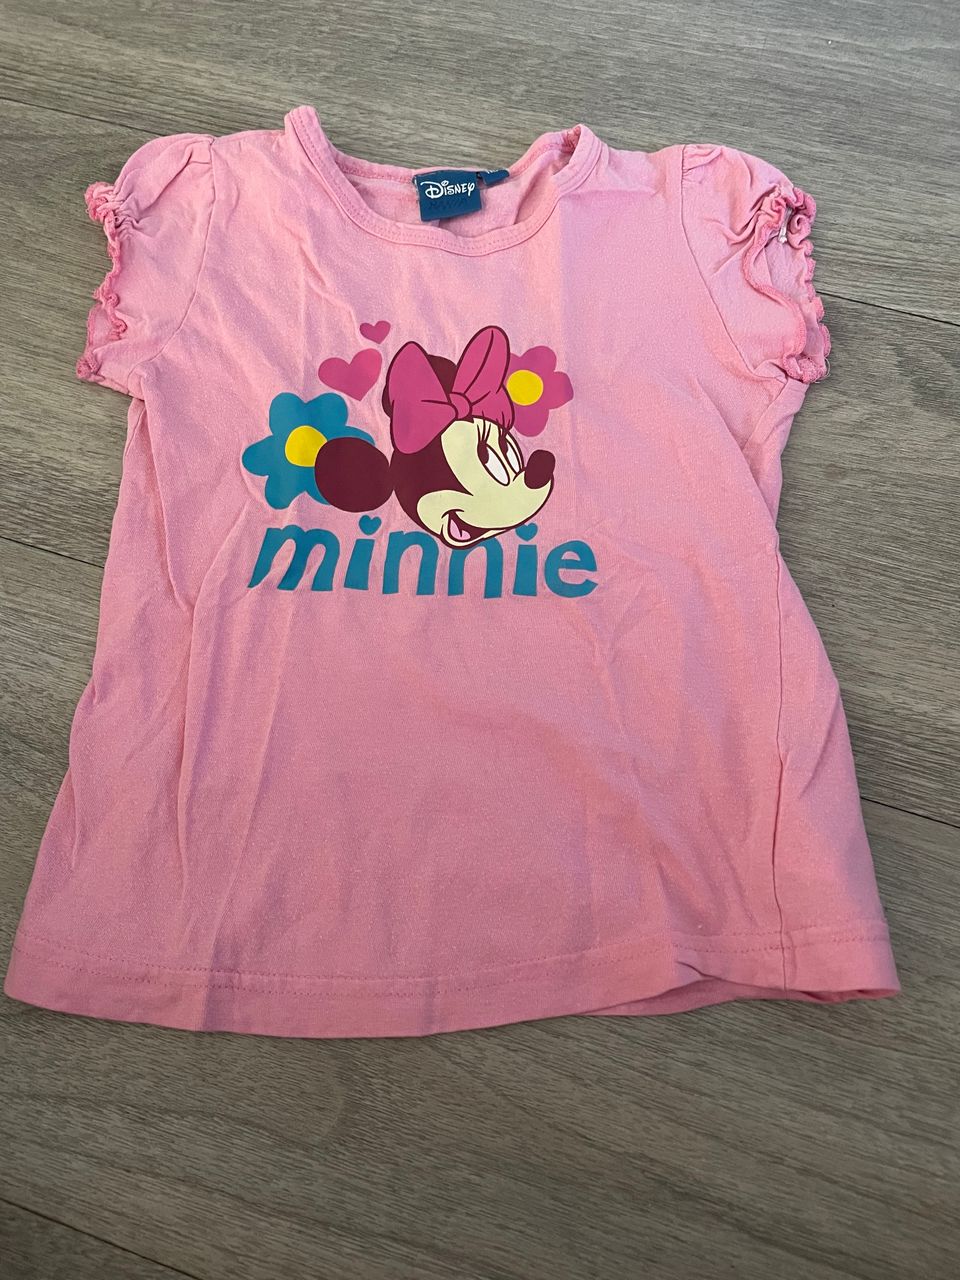 Pinkki Minni t-paita 110